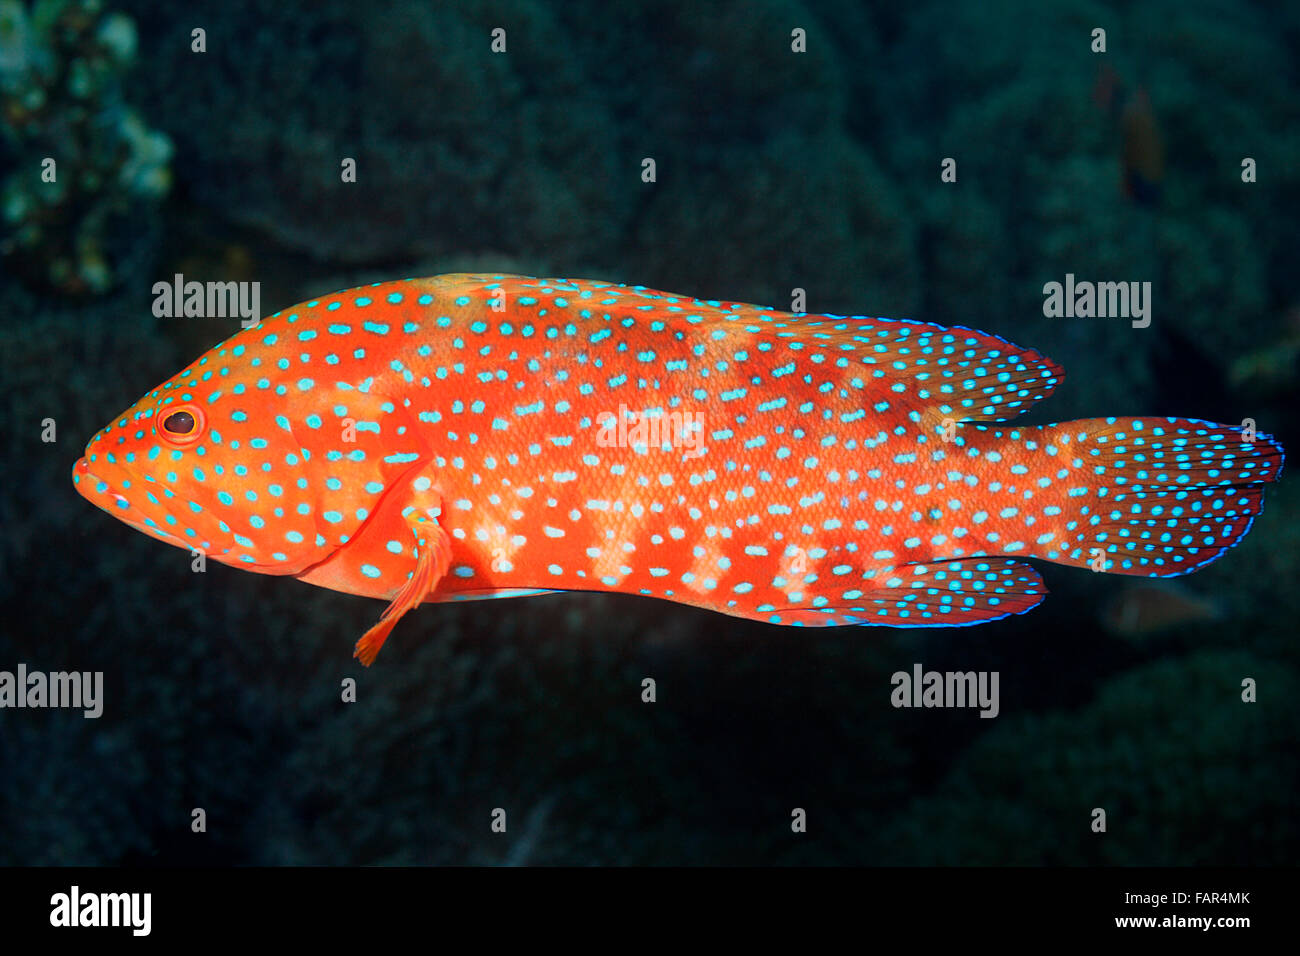 Les mérous, également connu sous le nom de Morue et Corail Coral Hind. Cephalopholis miniata. Tulamben, Bali, Indonésie. La mer de Bali, de l'Océan Indien Banque D'Images